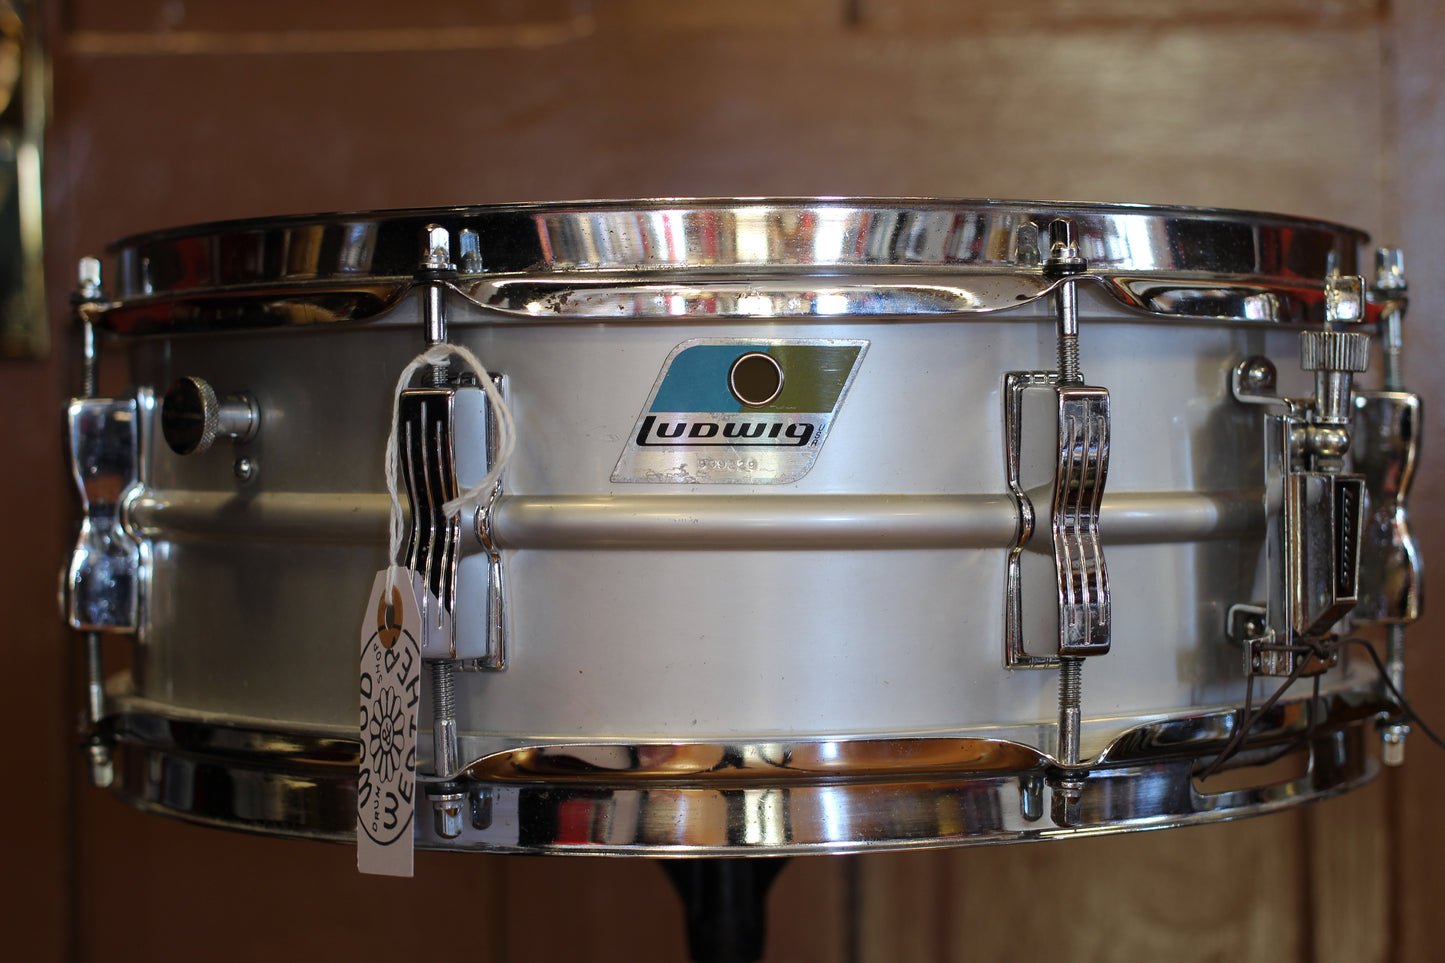 1976 Ludwig 5"x14" Acrolite Snare Drum Serial # 939229